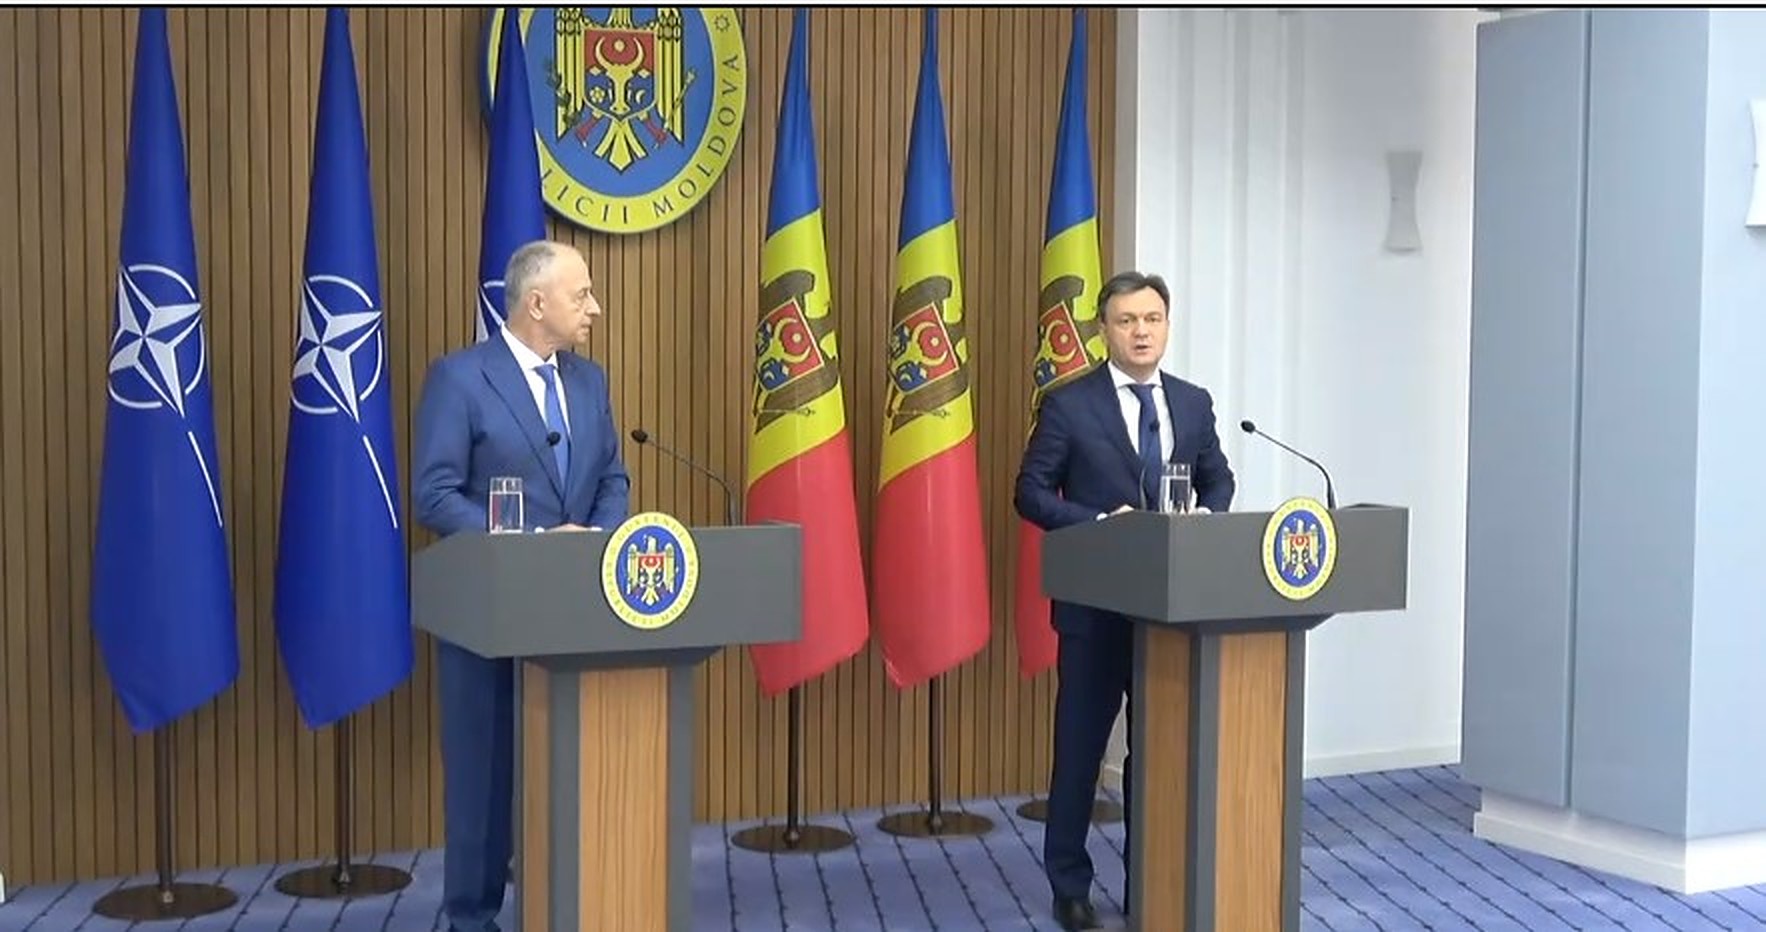 Geoană: Republica Moldova nu se află în prezent sub risc militar din partea Federației Ruse